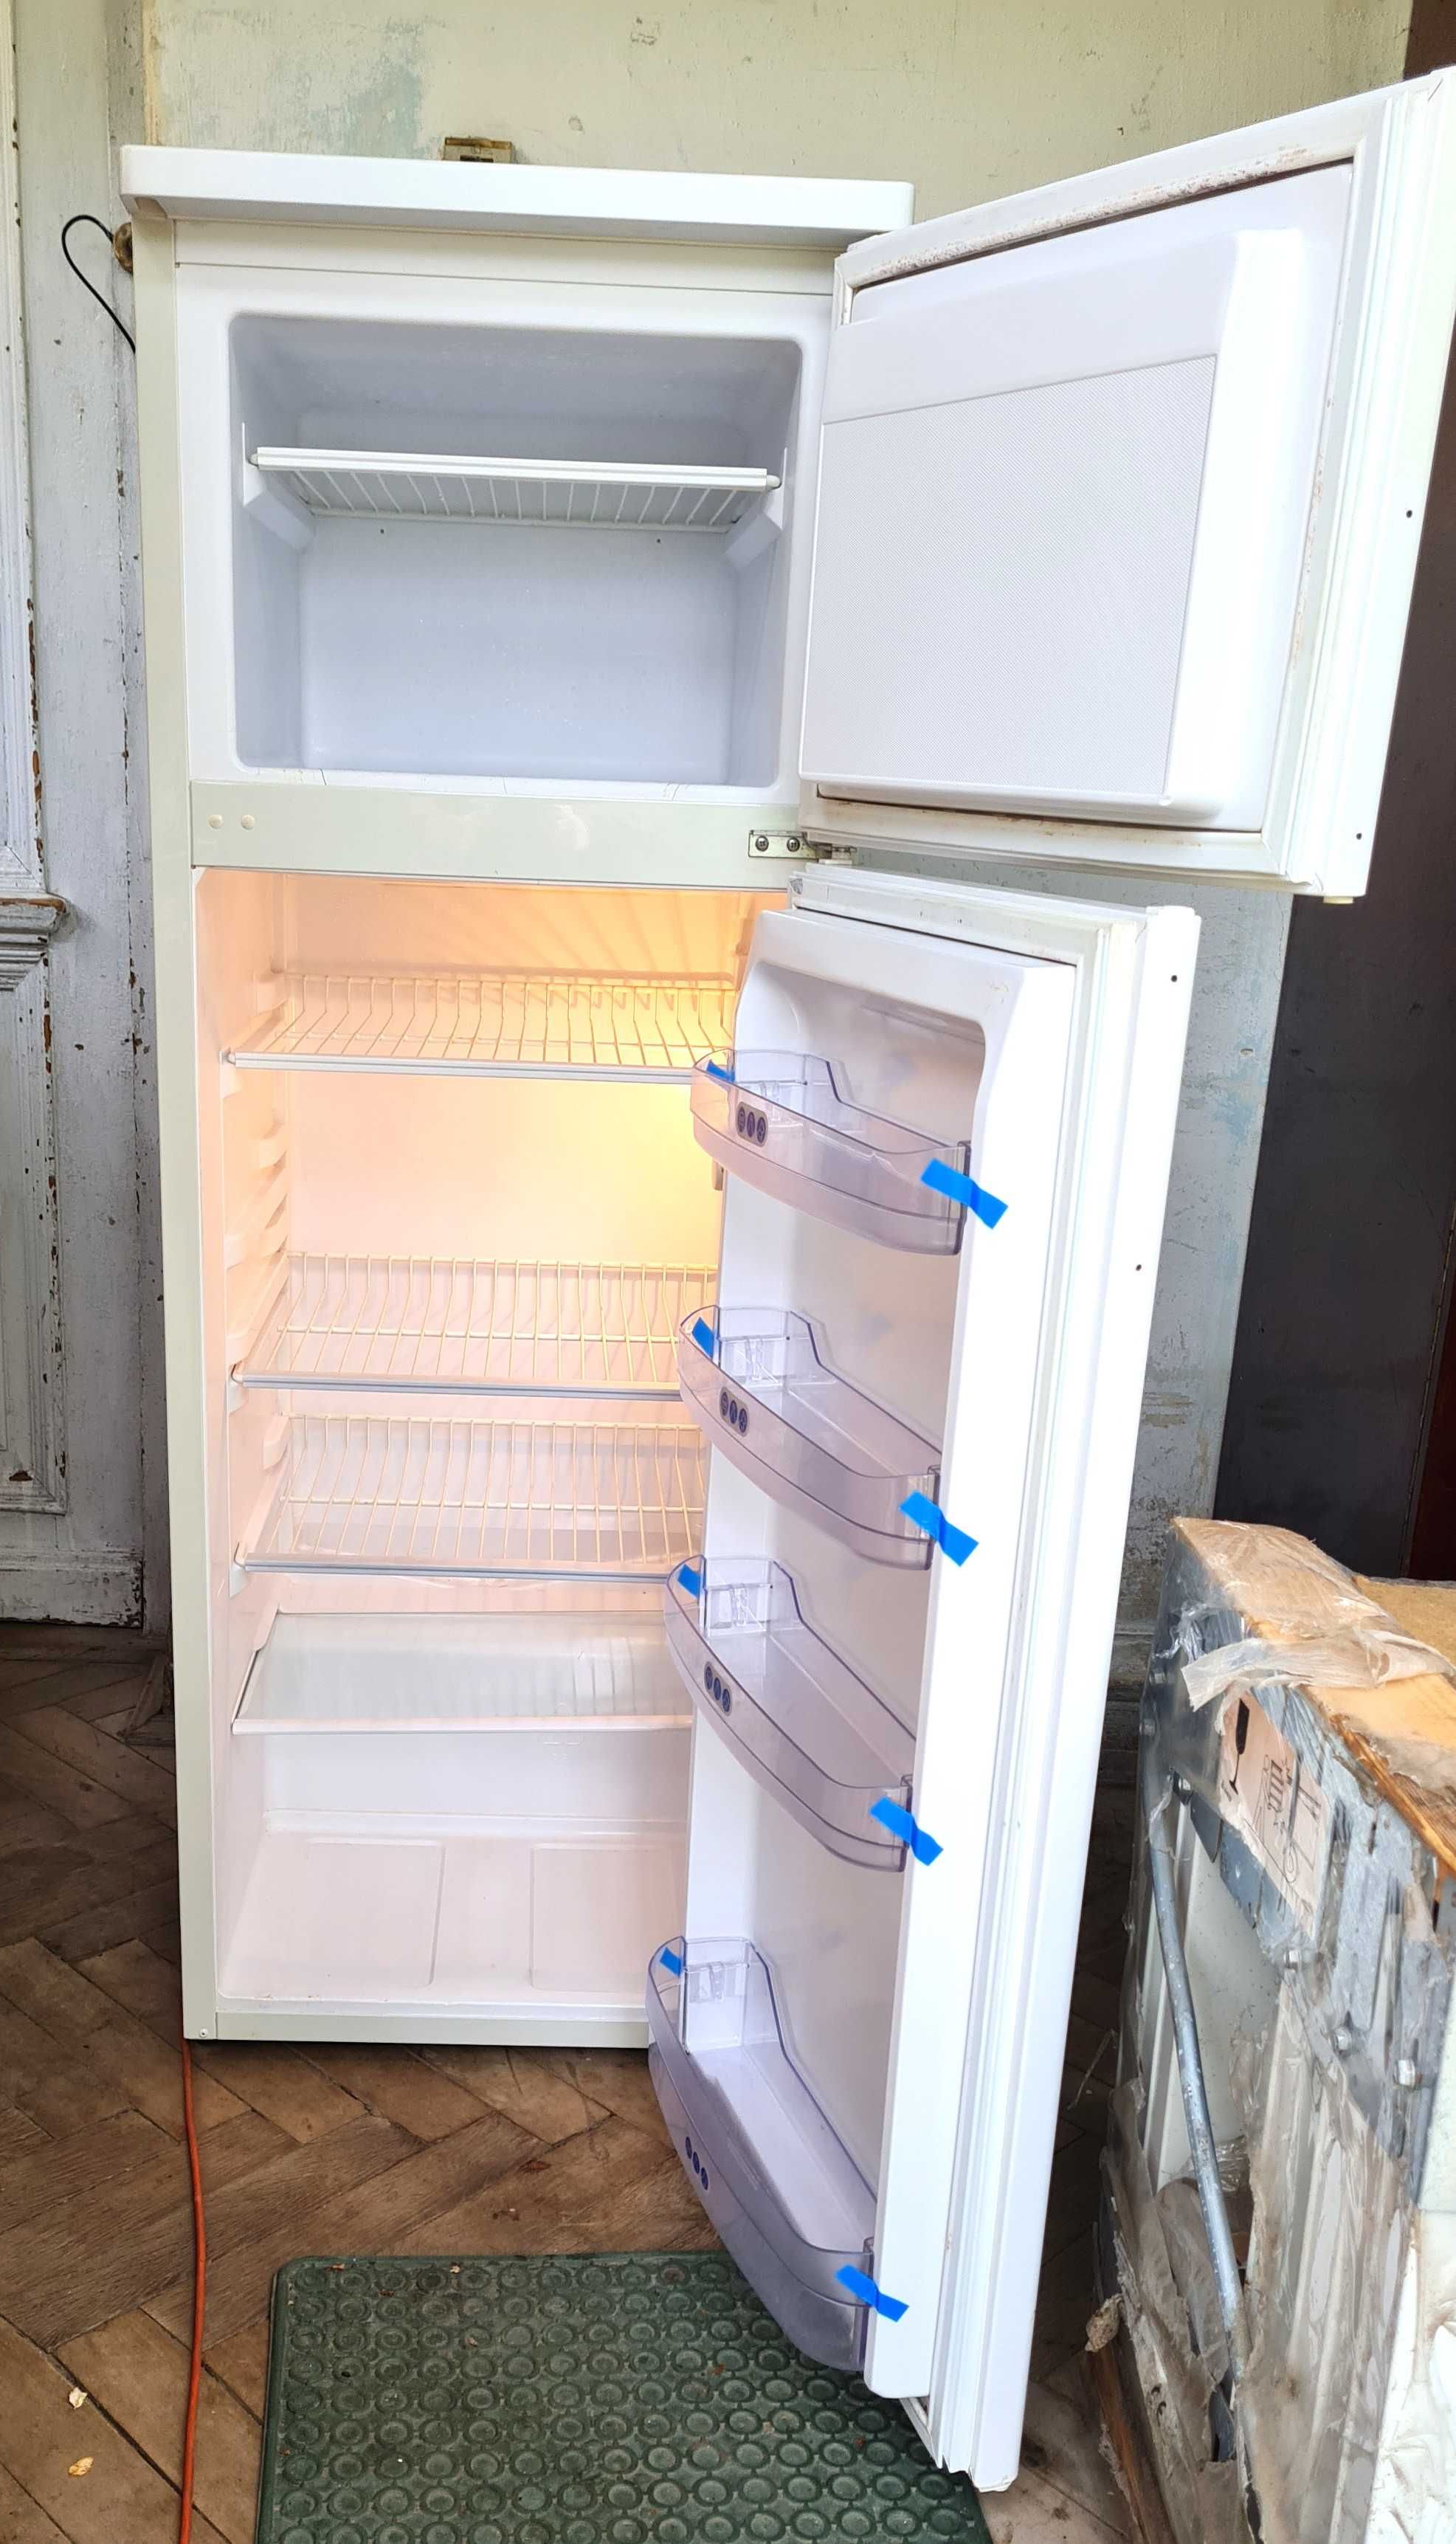 Холодильник Whirlpool б/в в гарному робочому стані